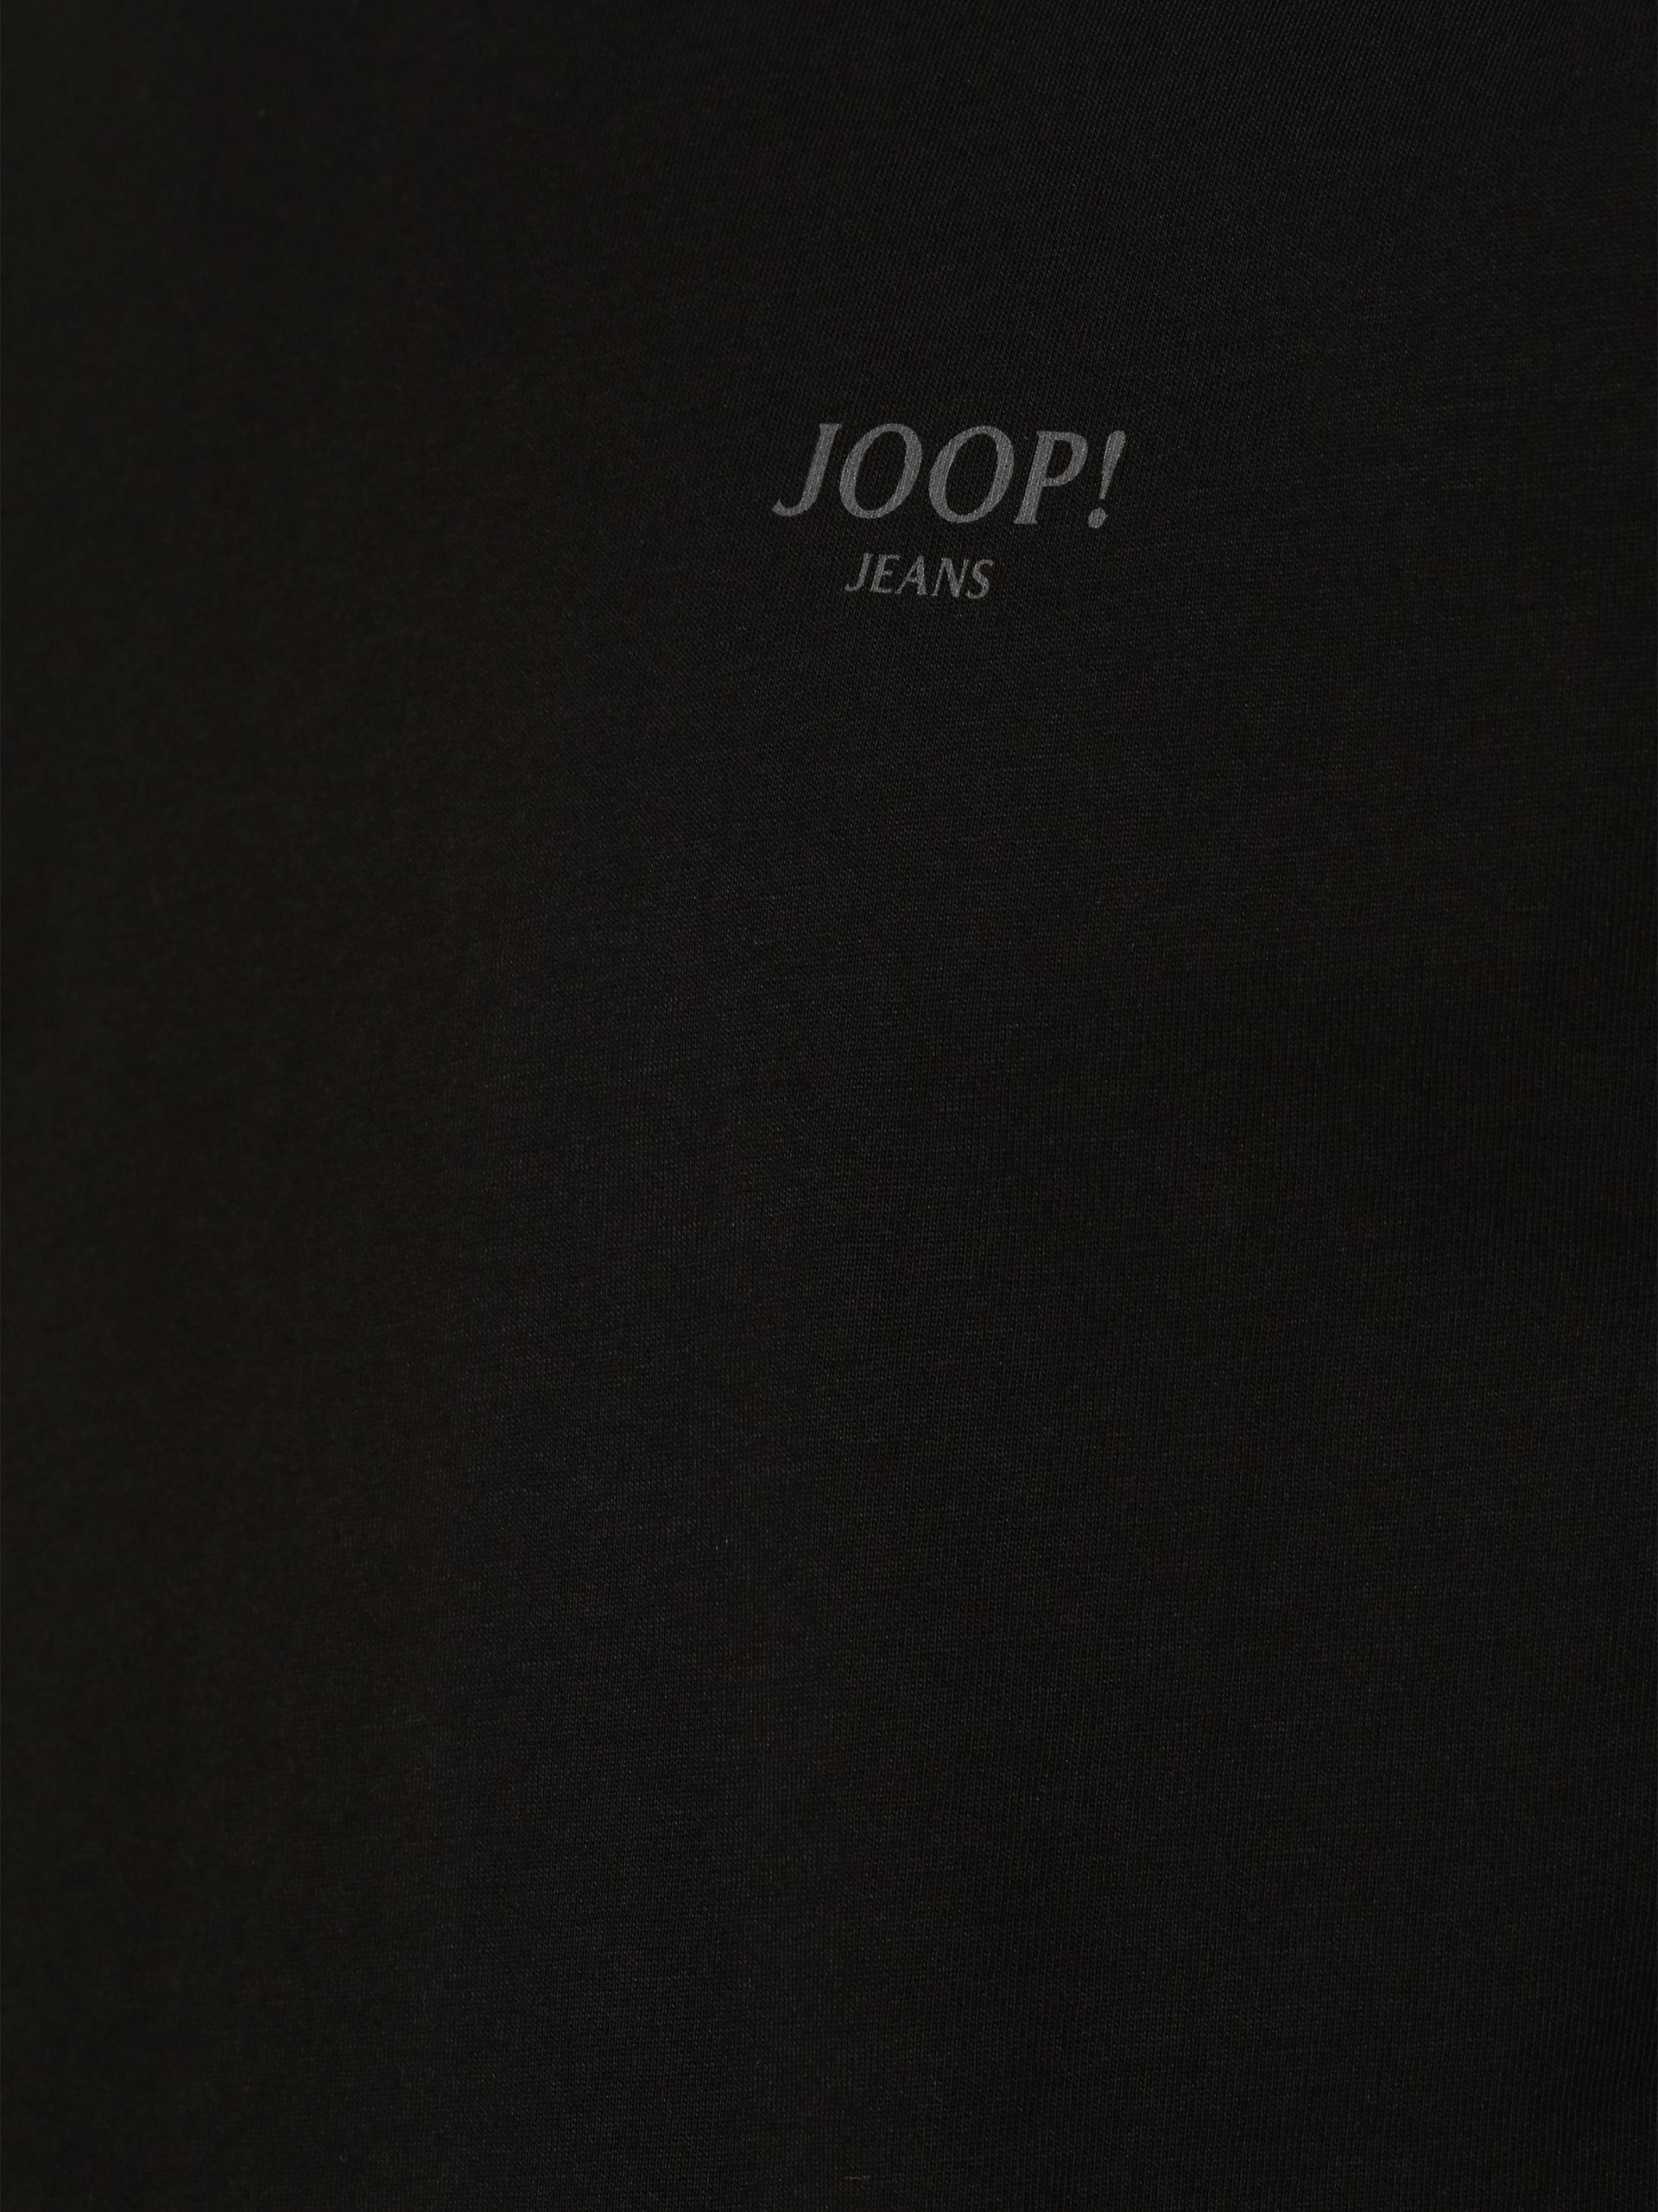 Alphis Schwarz T-Shirt Joop! 001